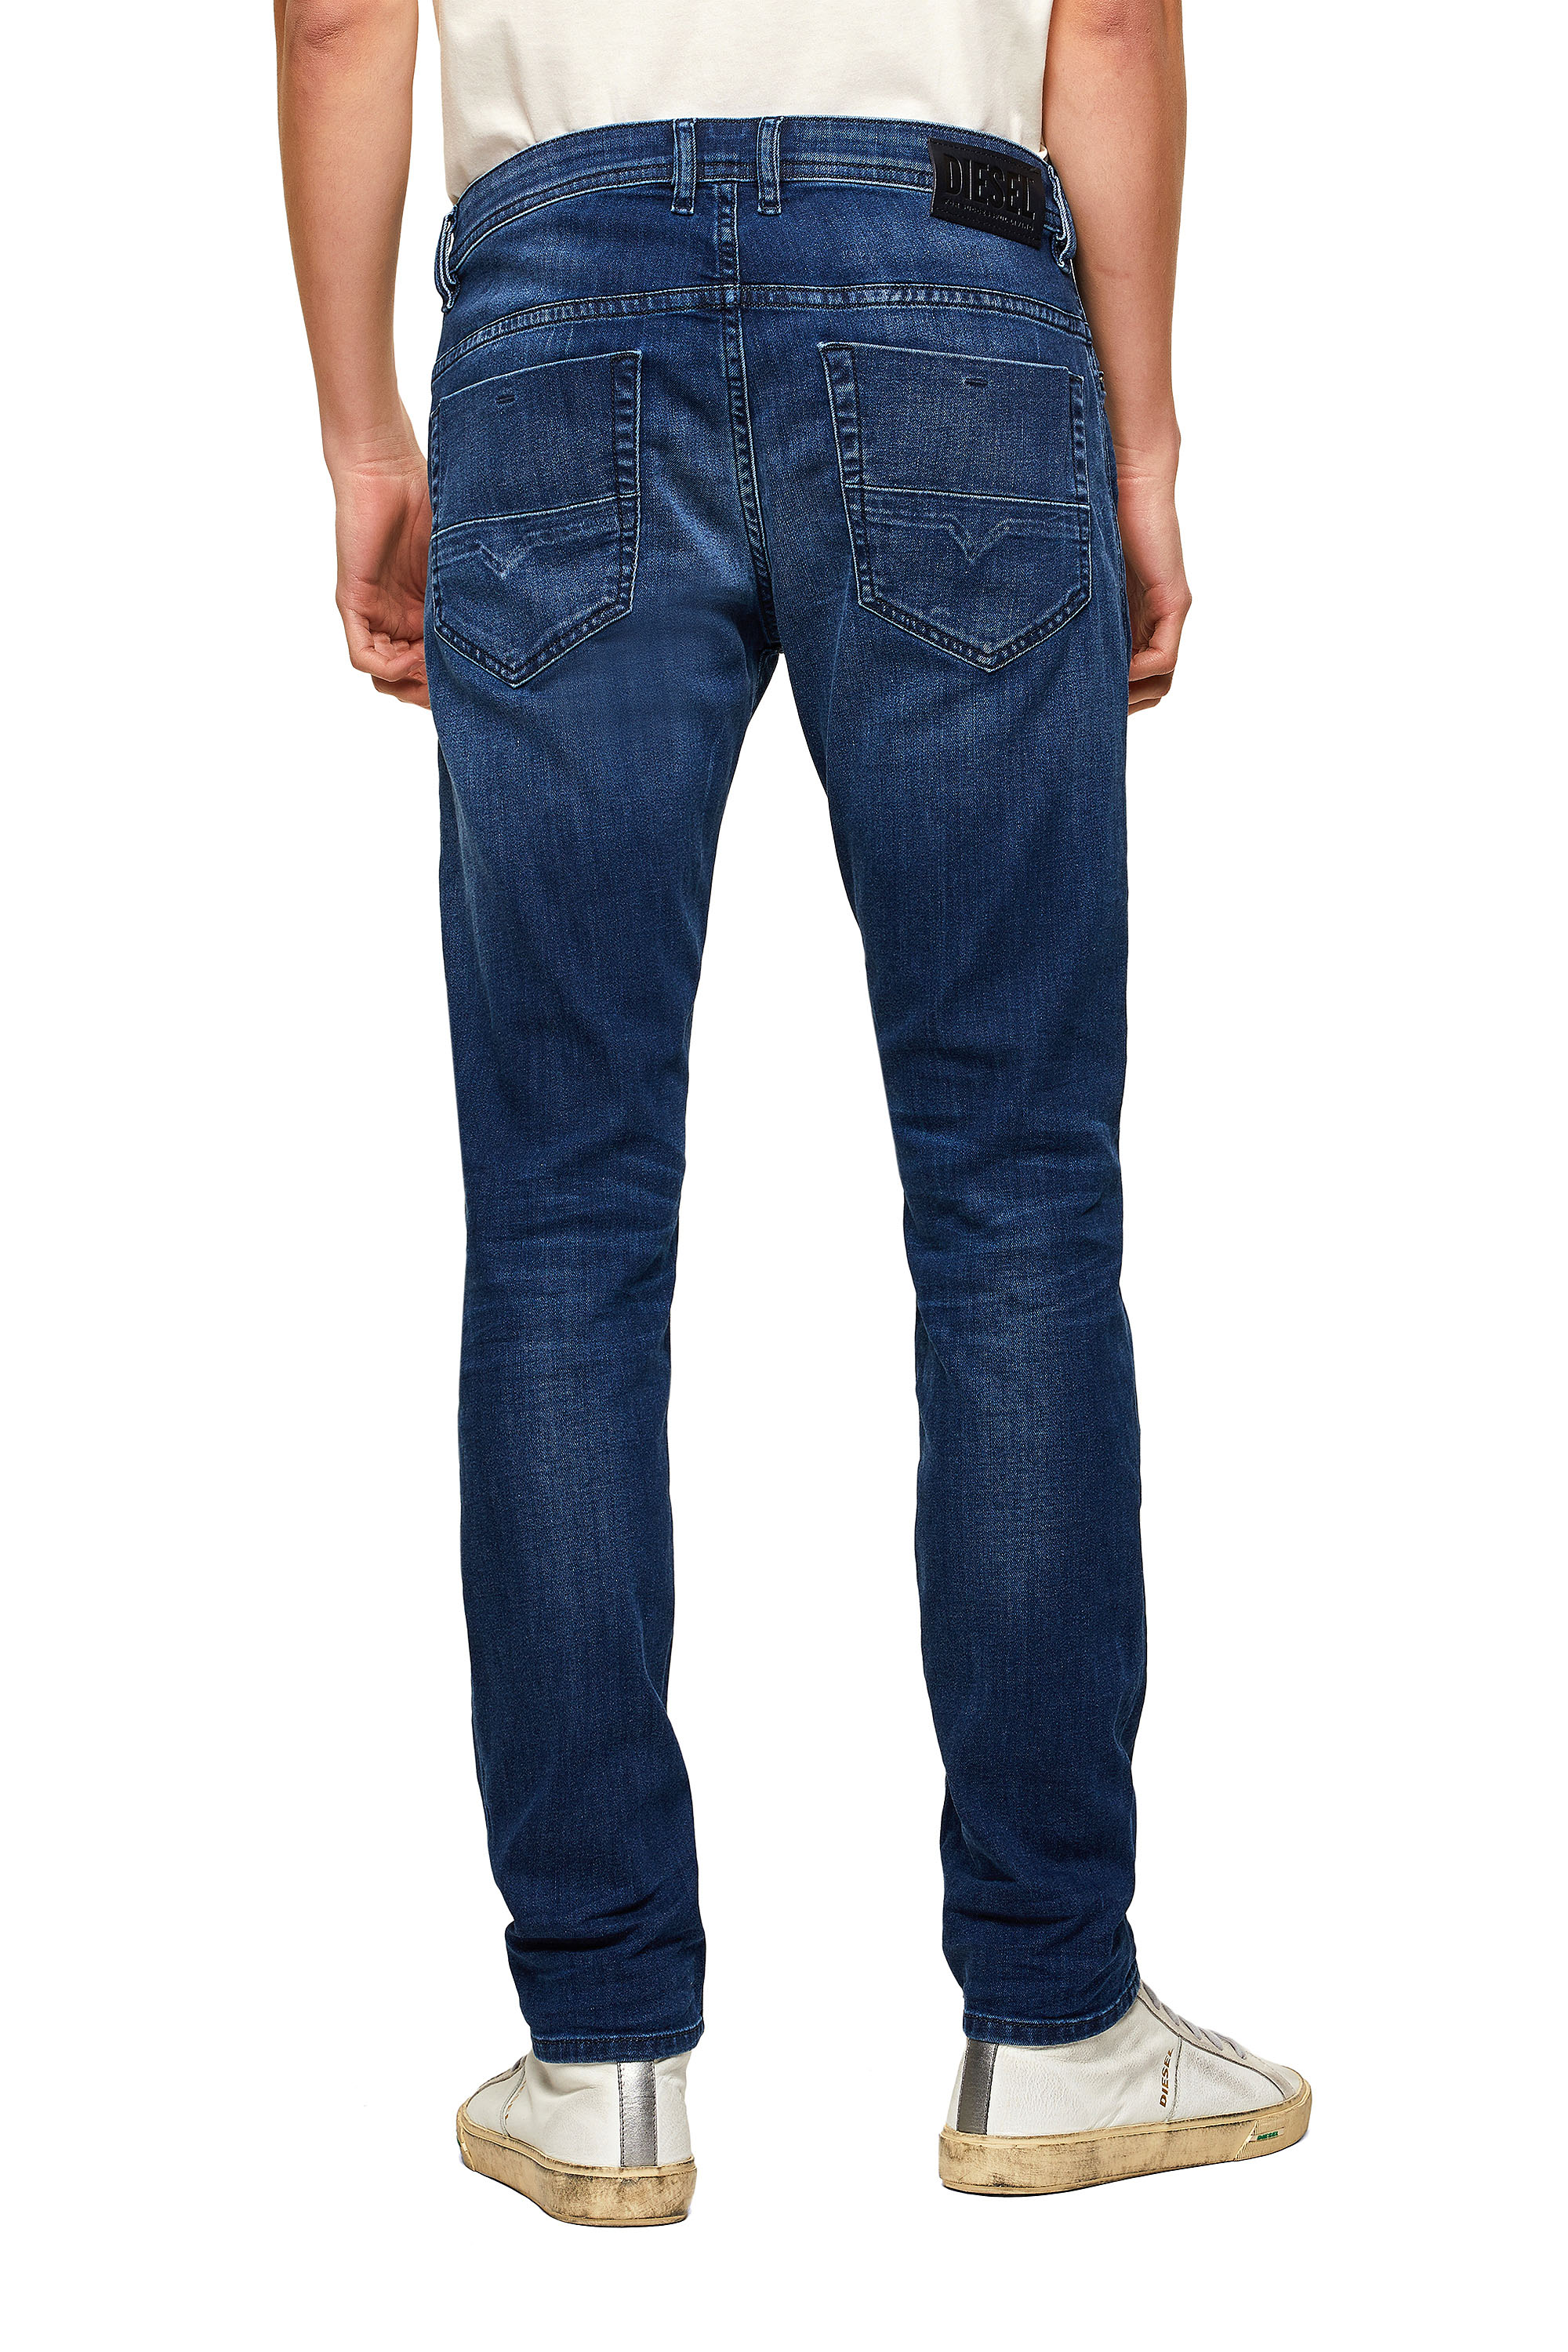 Diesel - Thommer Slim Jeans 069SF,  - Image 2